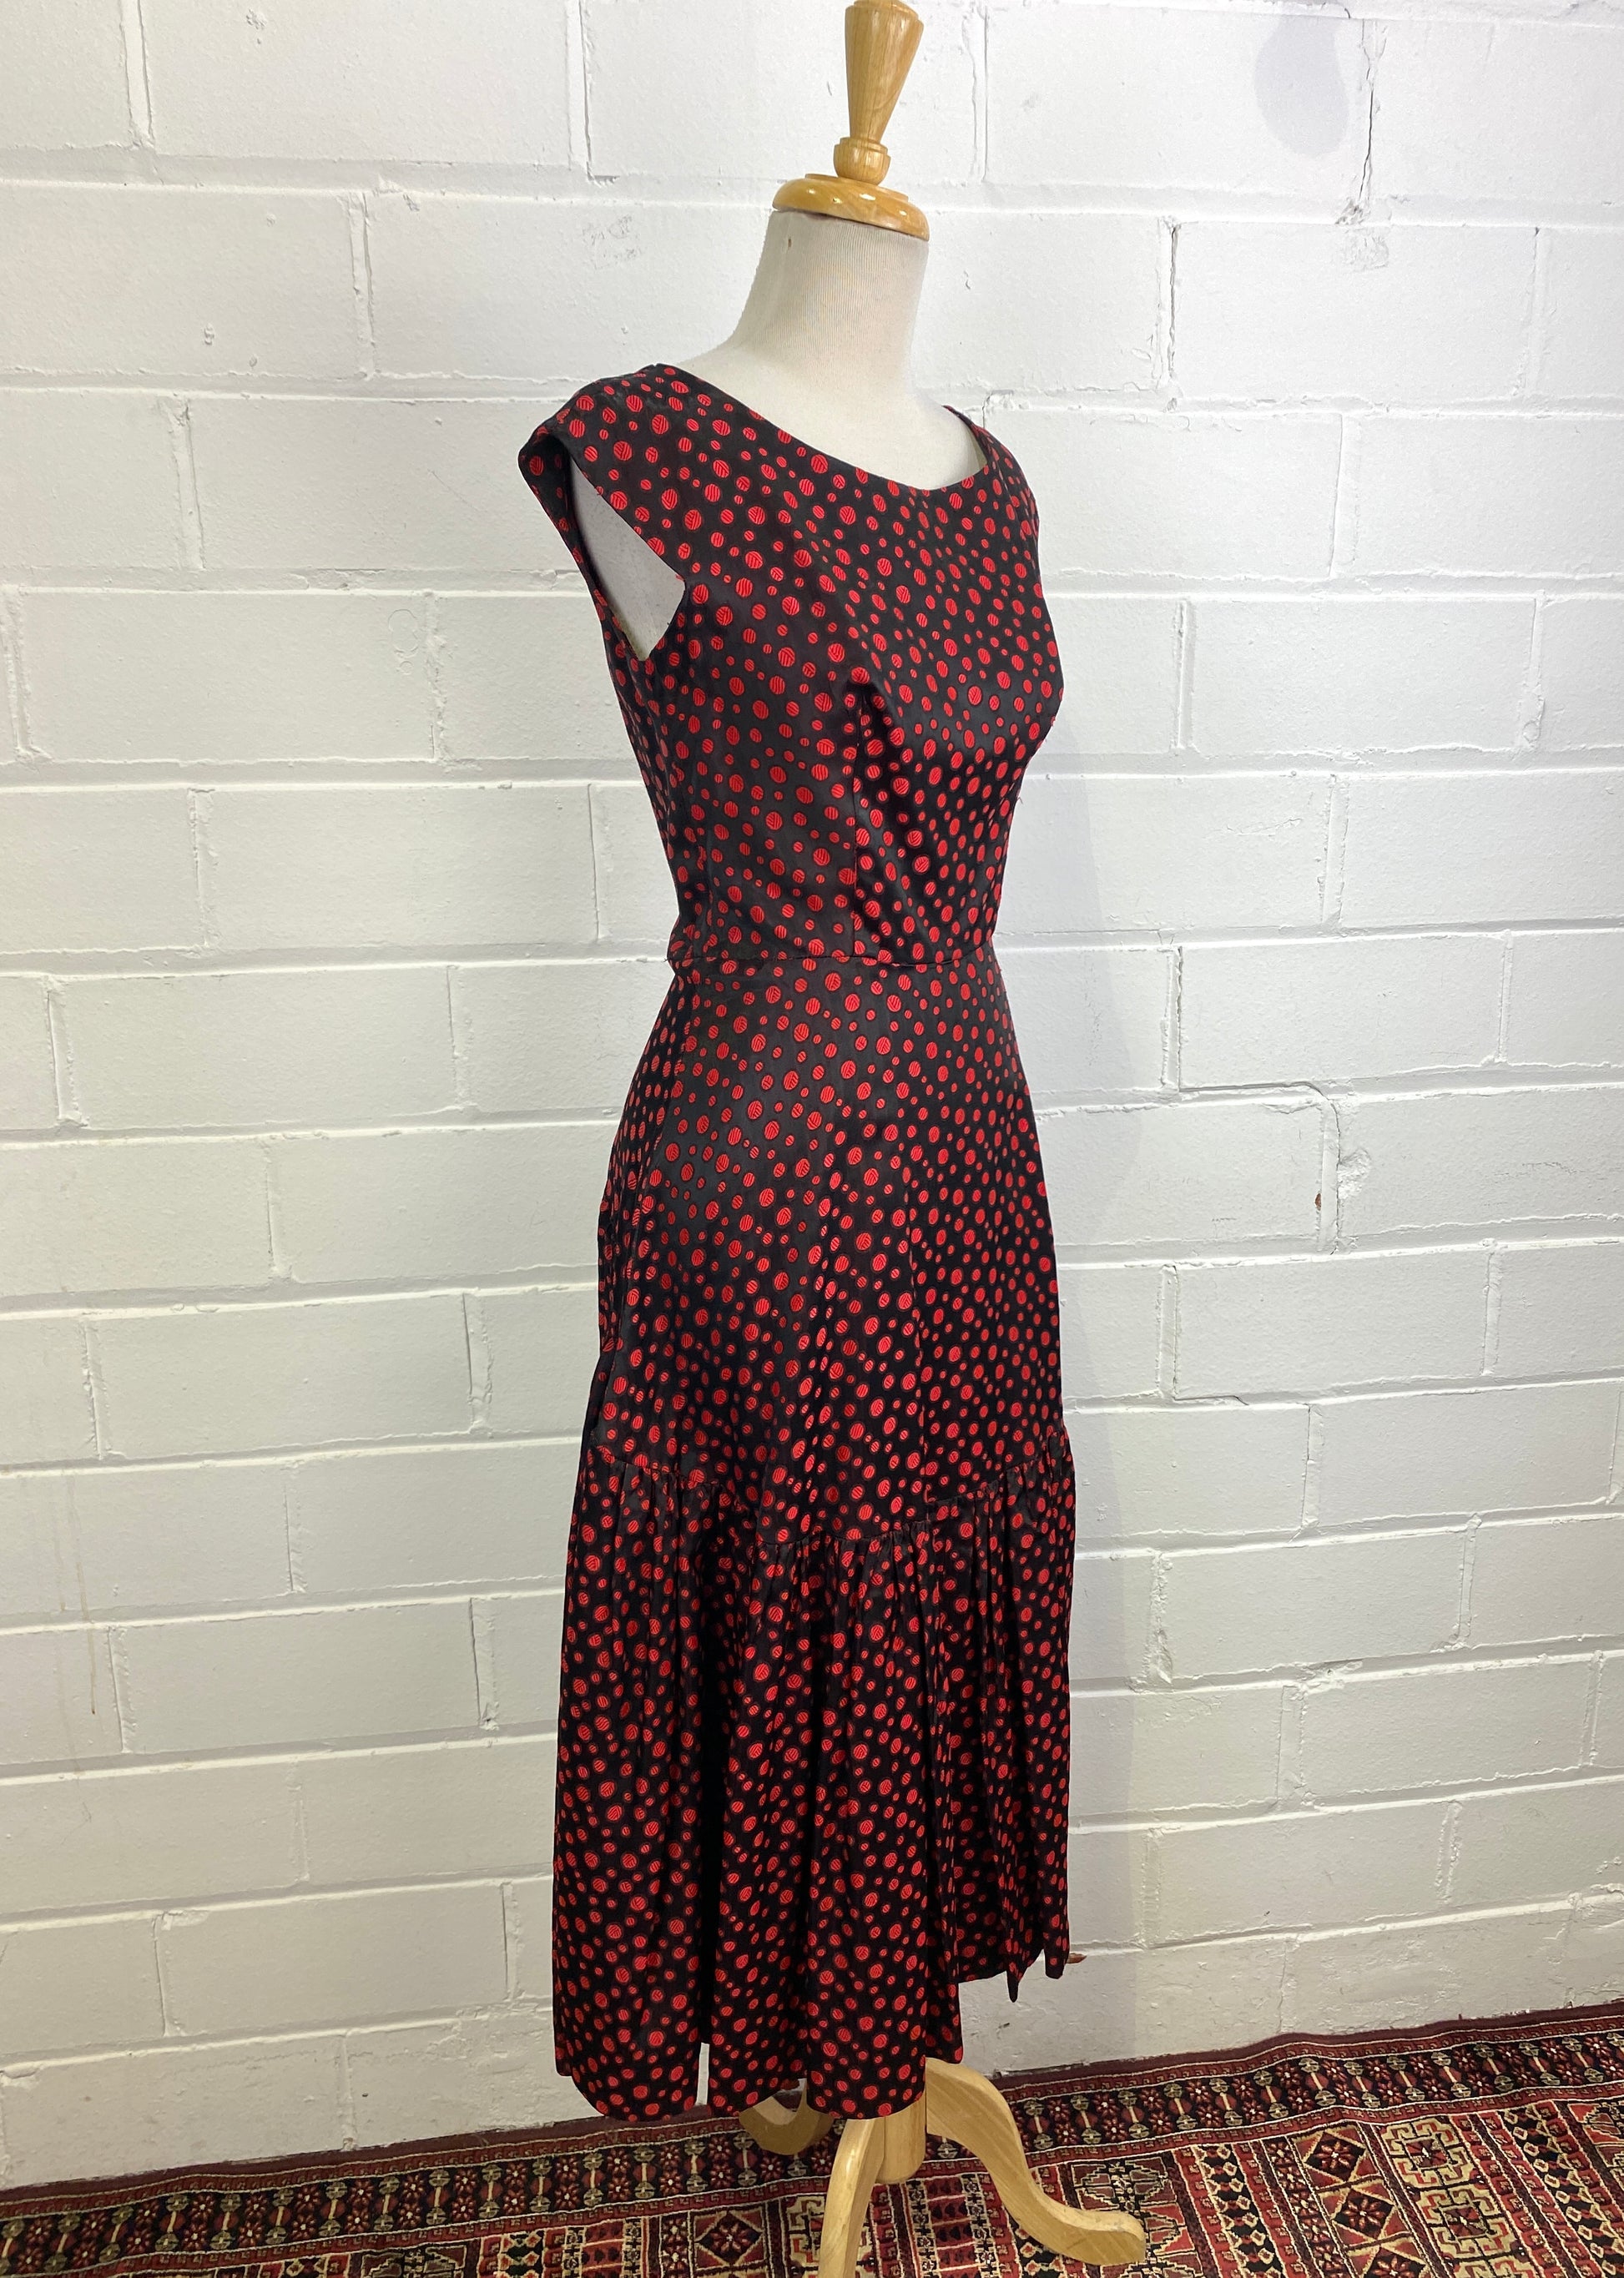 Vintage 1950s Red & Black Dot Dress, Golden Gate